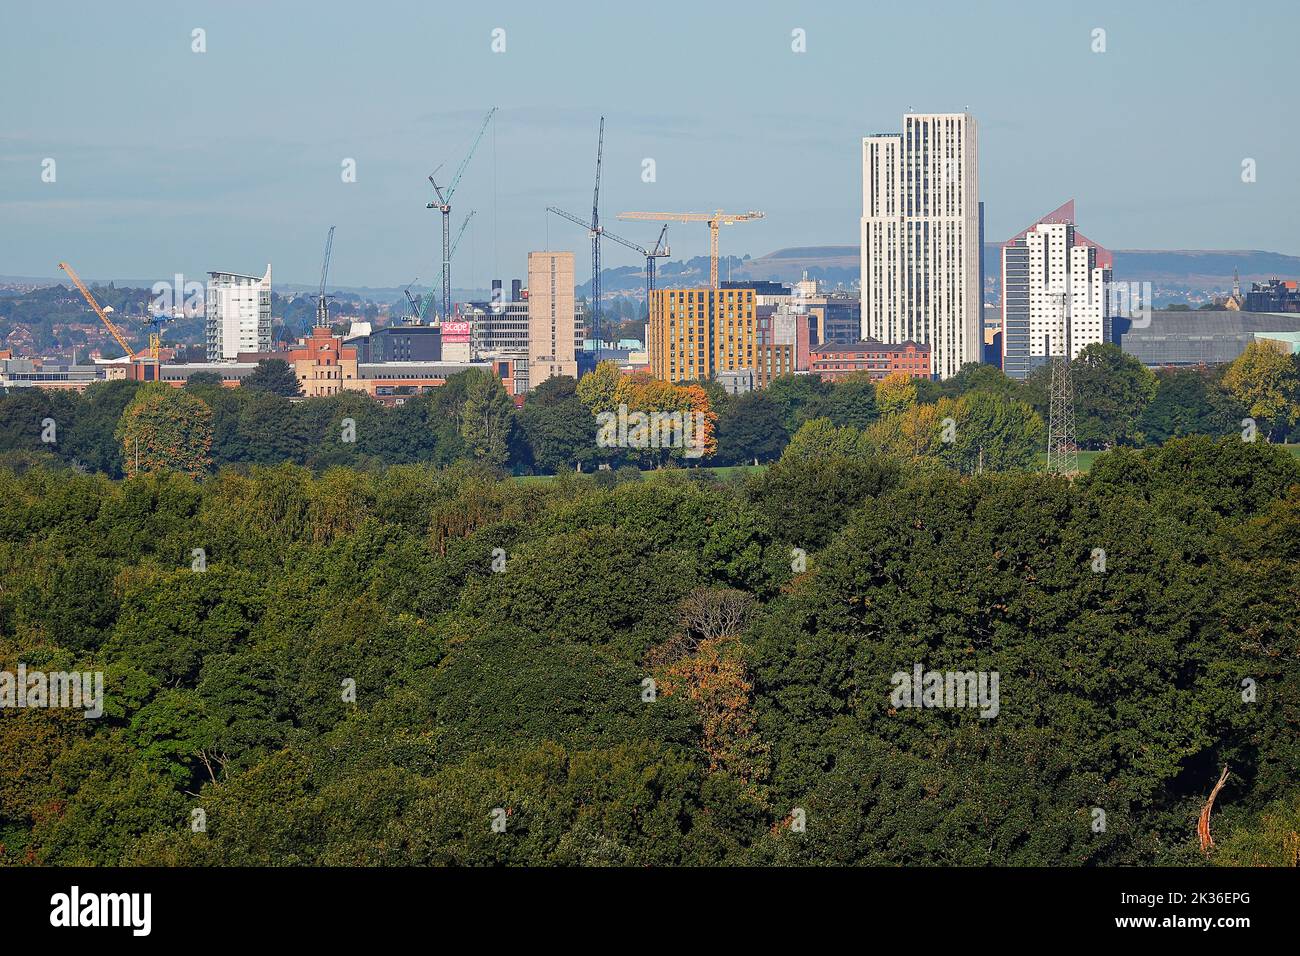 Una vista del horizonte de la ciudad de Leeds con grúas torre en los lugares de construcción Foto de stock